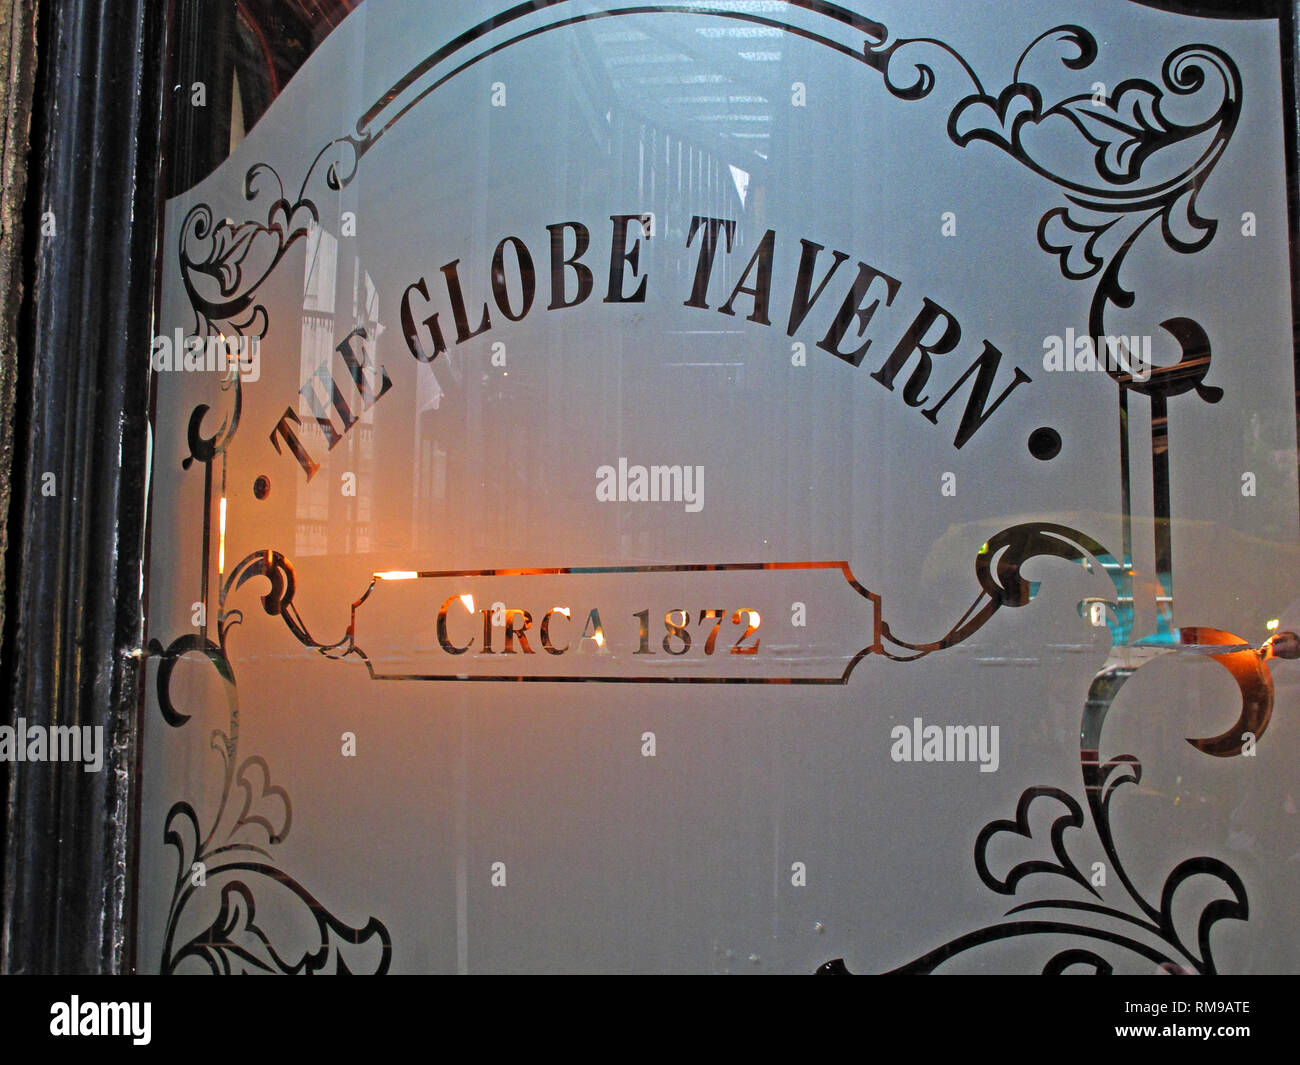 Le Globe Tavern Circa 1872 pub, 8 St Bedale, Londres, Angleterre, Royaume-Uni, SE1 9AL Banque D'Images